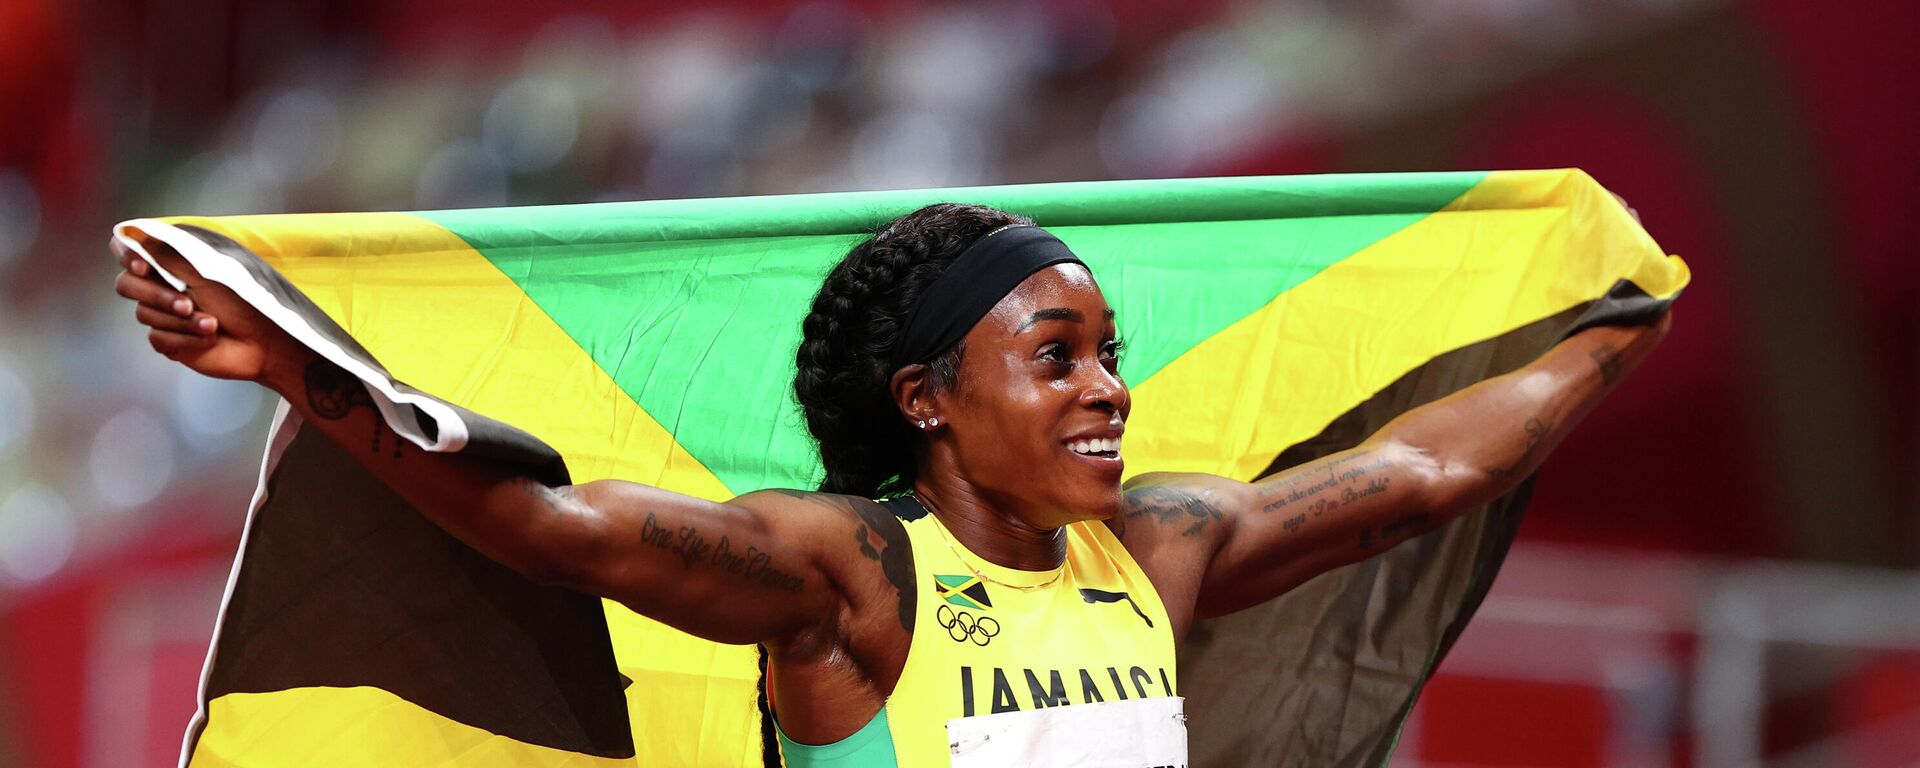 La atleta jamaicana Elaine Thompson-Herah, Tokio, el 3 de agosto de 2021 - Sputnik Mundo, 1920, 03.08.2021